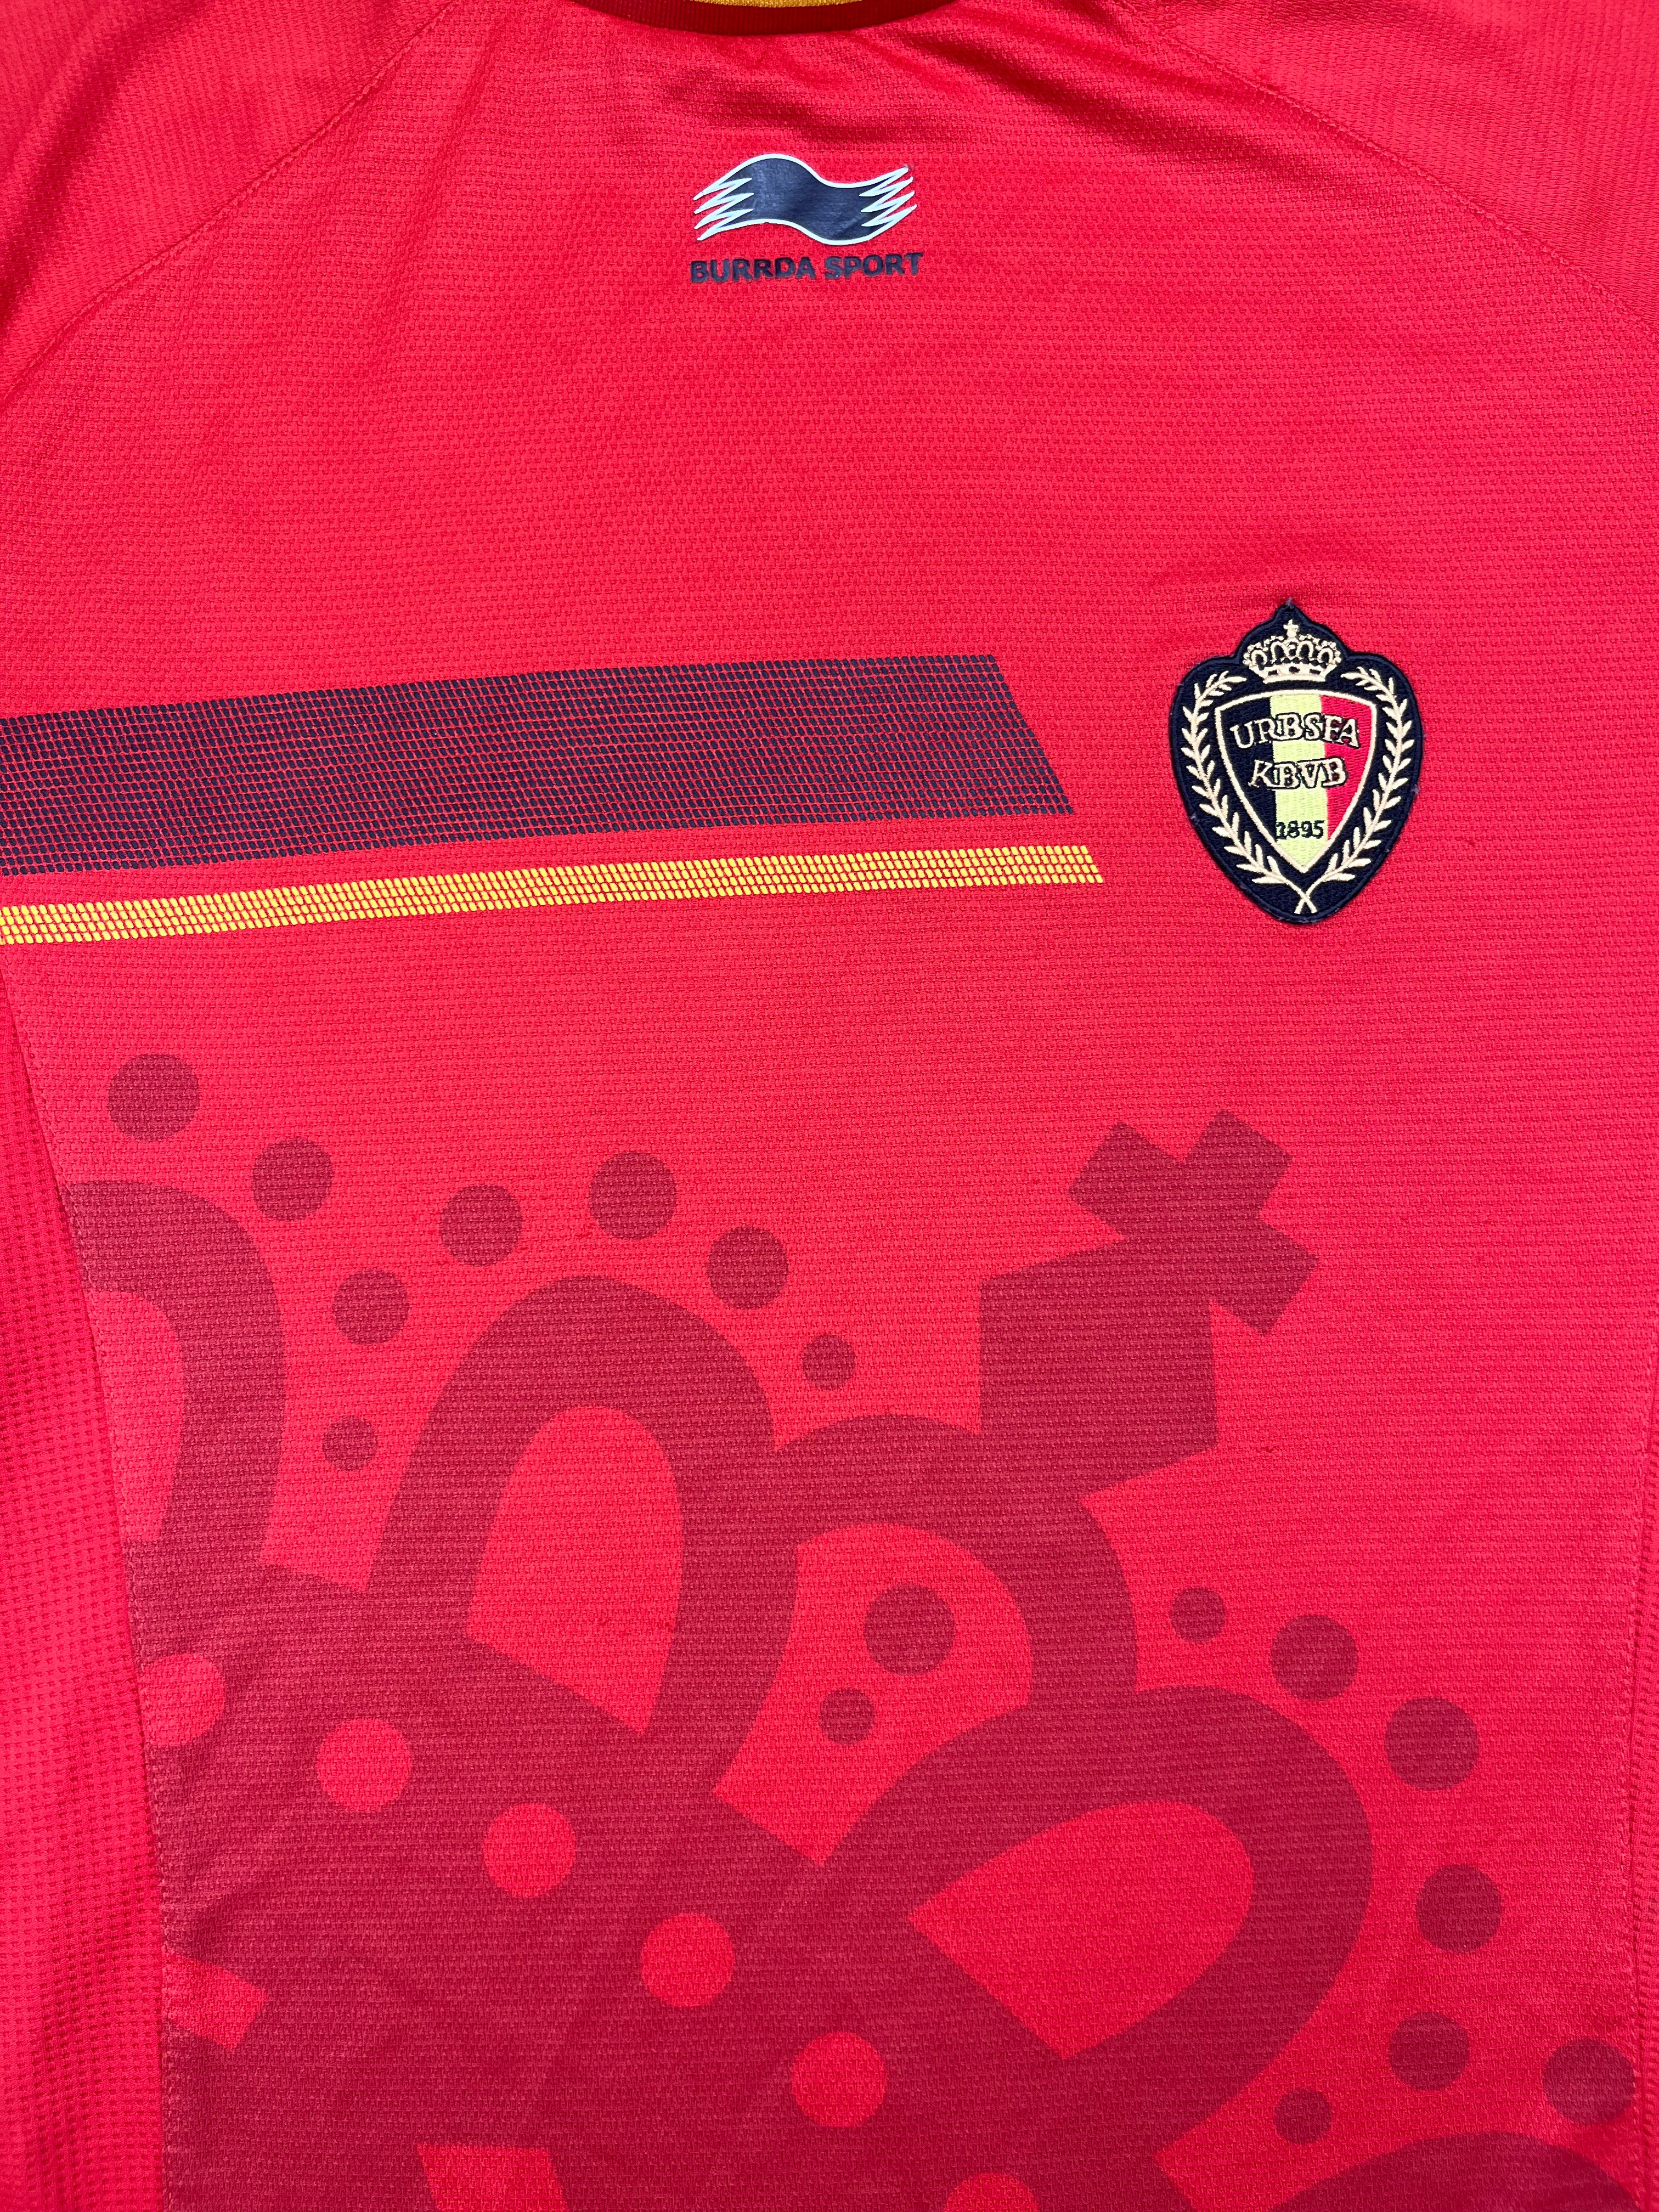 2014/15 Belgium Home Shirt (XL) 8/10